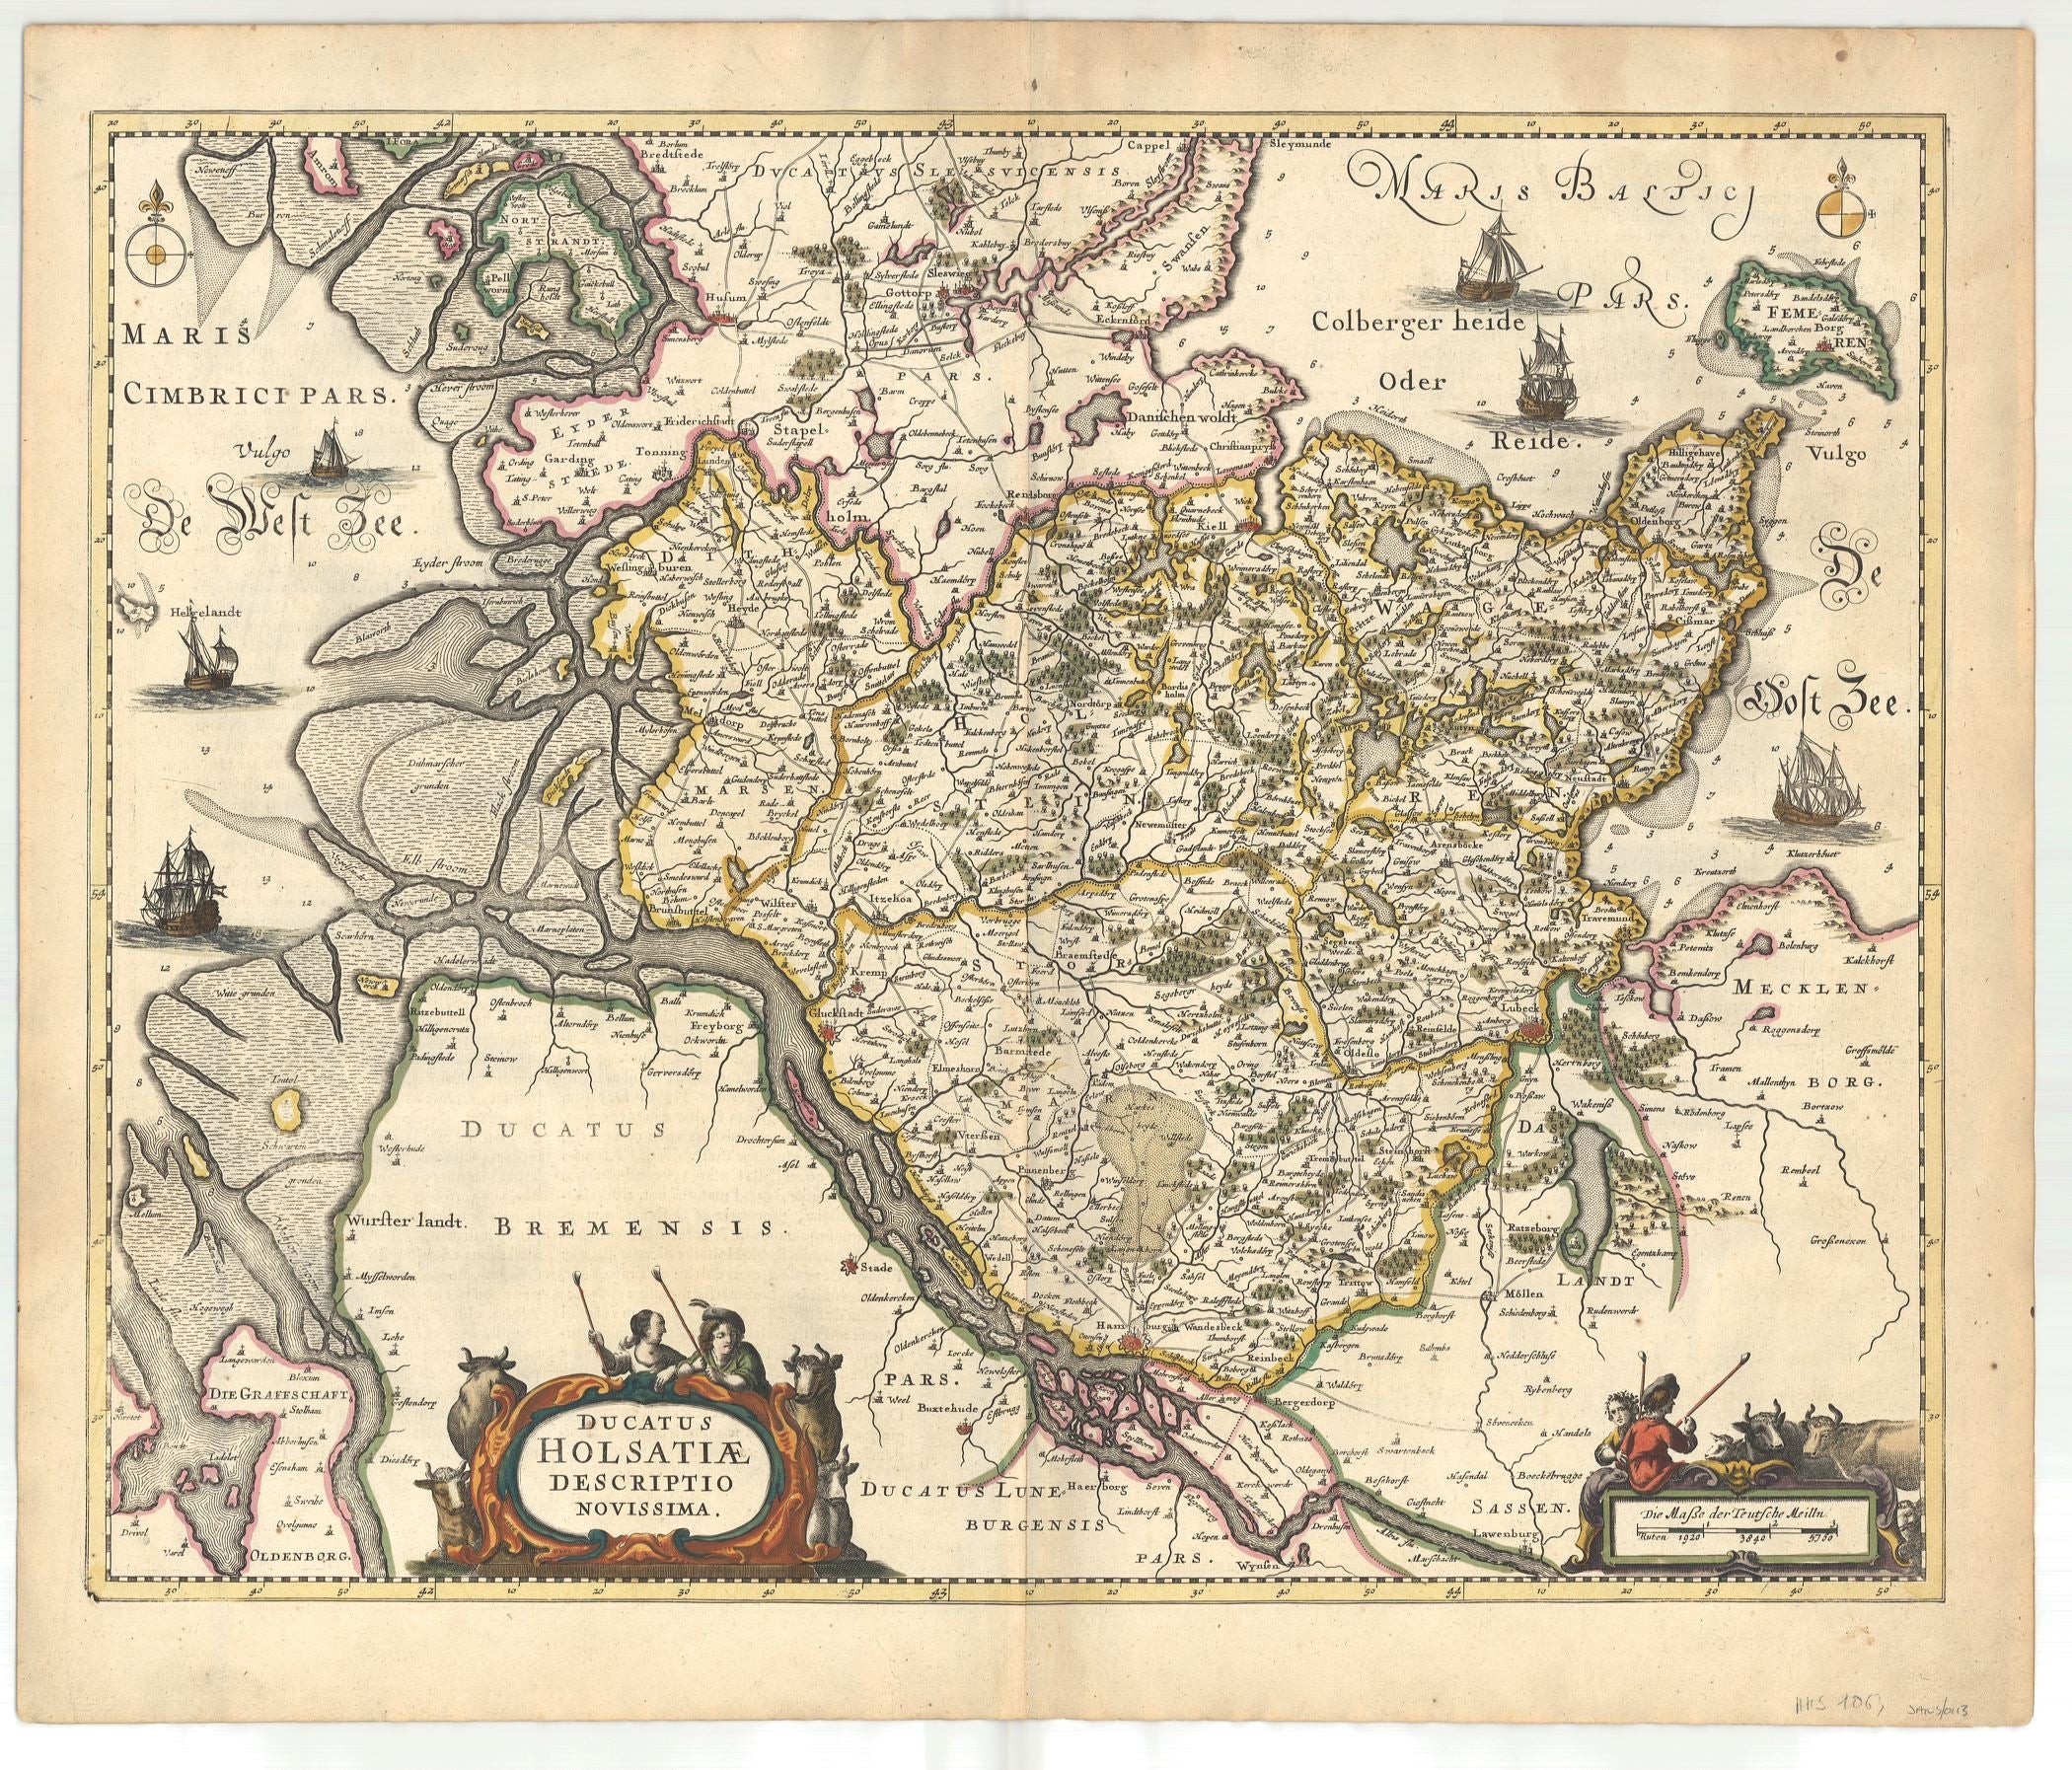 Janssonius, Johannes: Ducatus Holsatiae Descriptio Novissima 1666